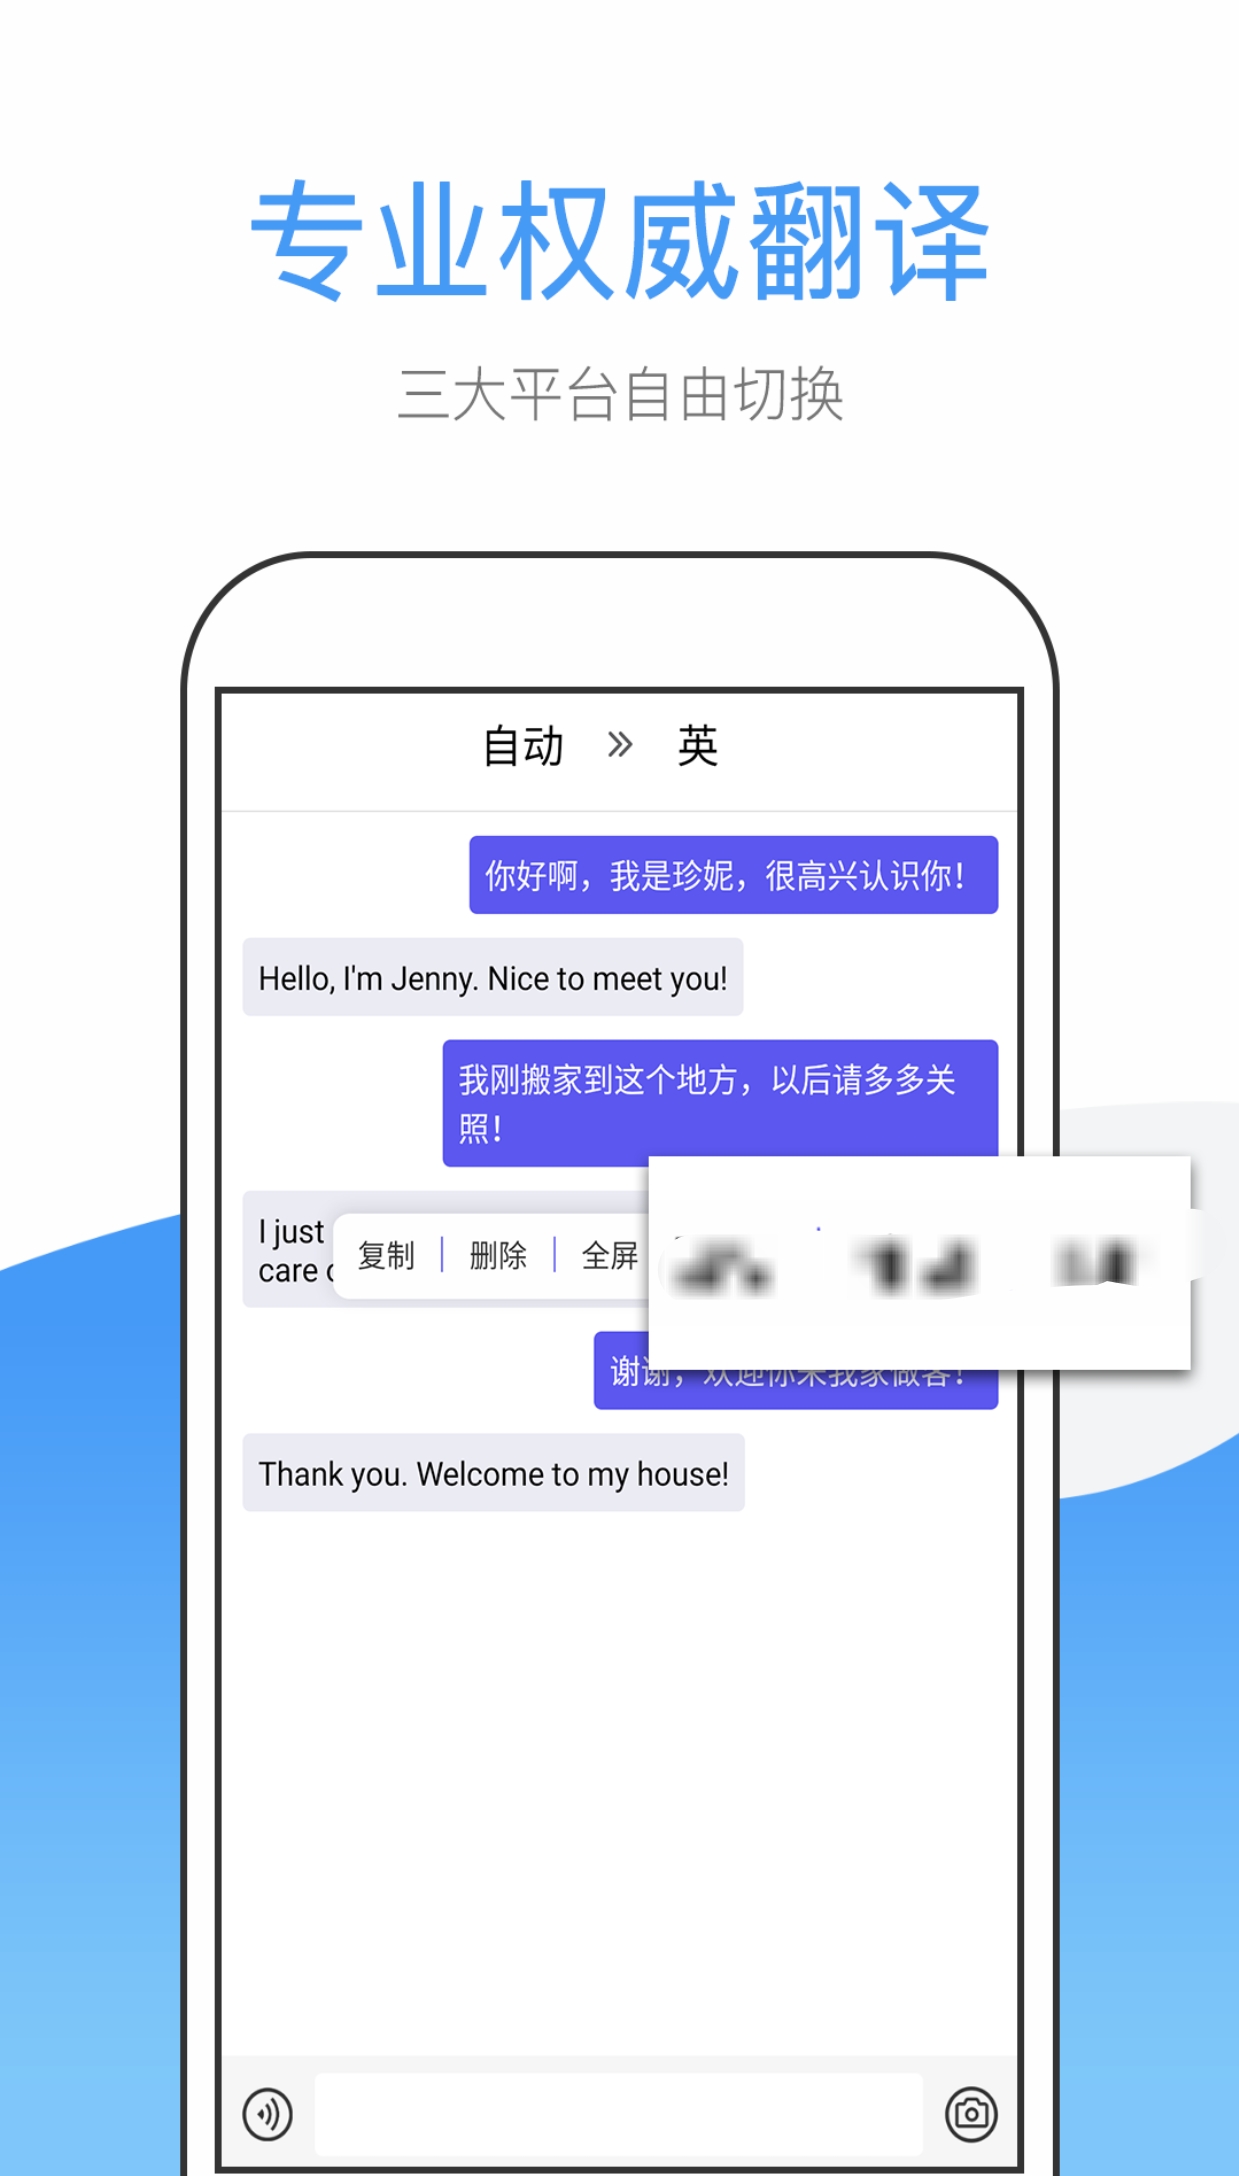 英译汉翻译app哪个好用